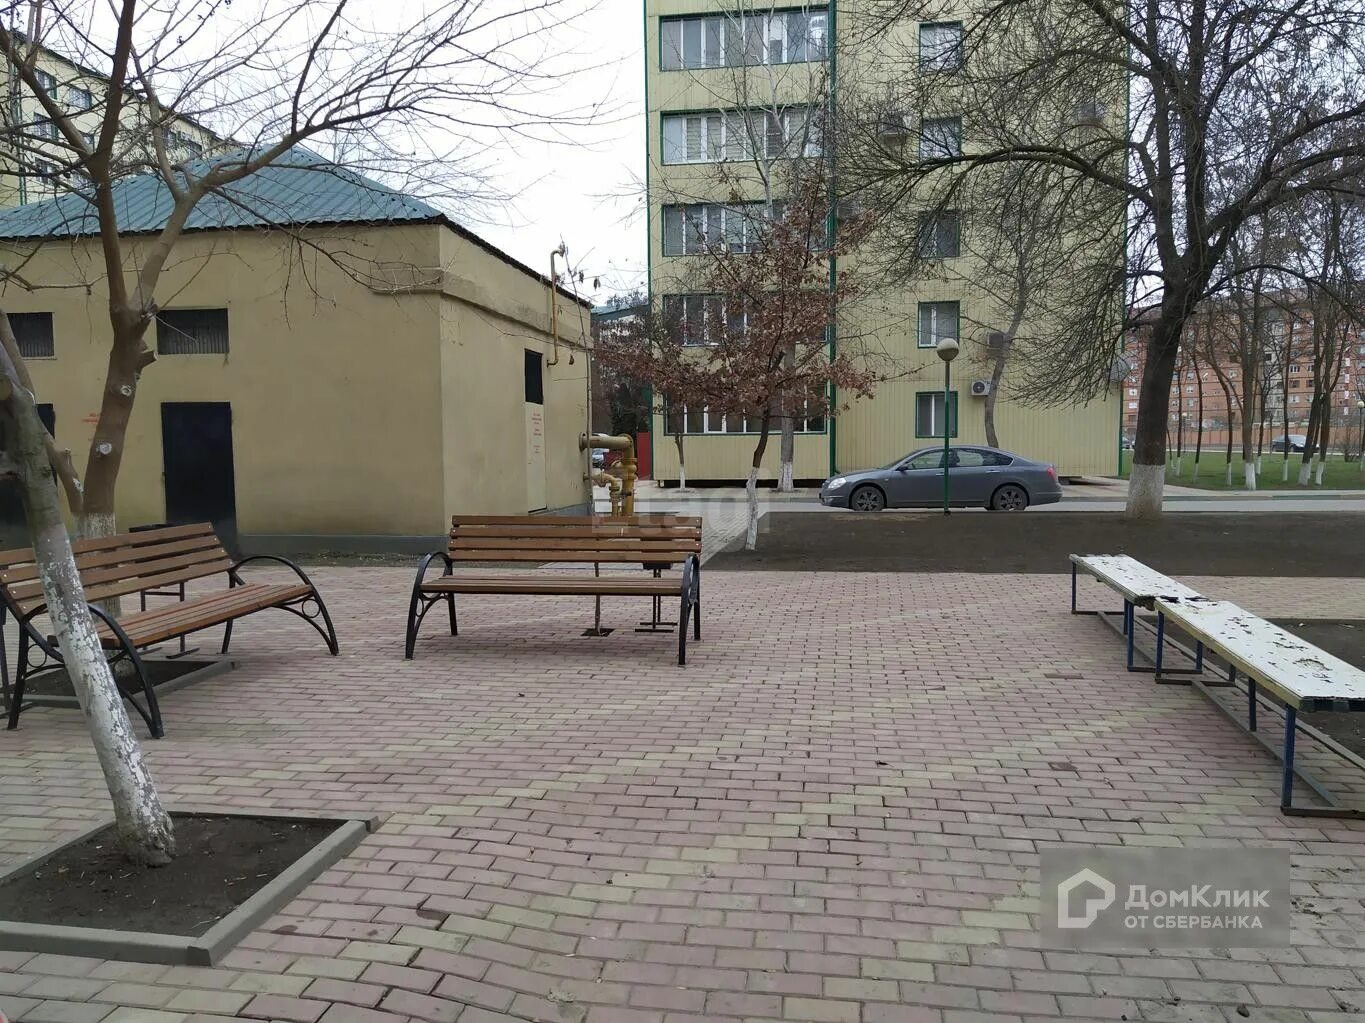 2 квартира снять в грозном. Улица Айдамирова 141 в Грозном. Айдамирова 141 к8 фото. Снят 2 дом в Чечне.